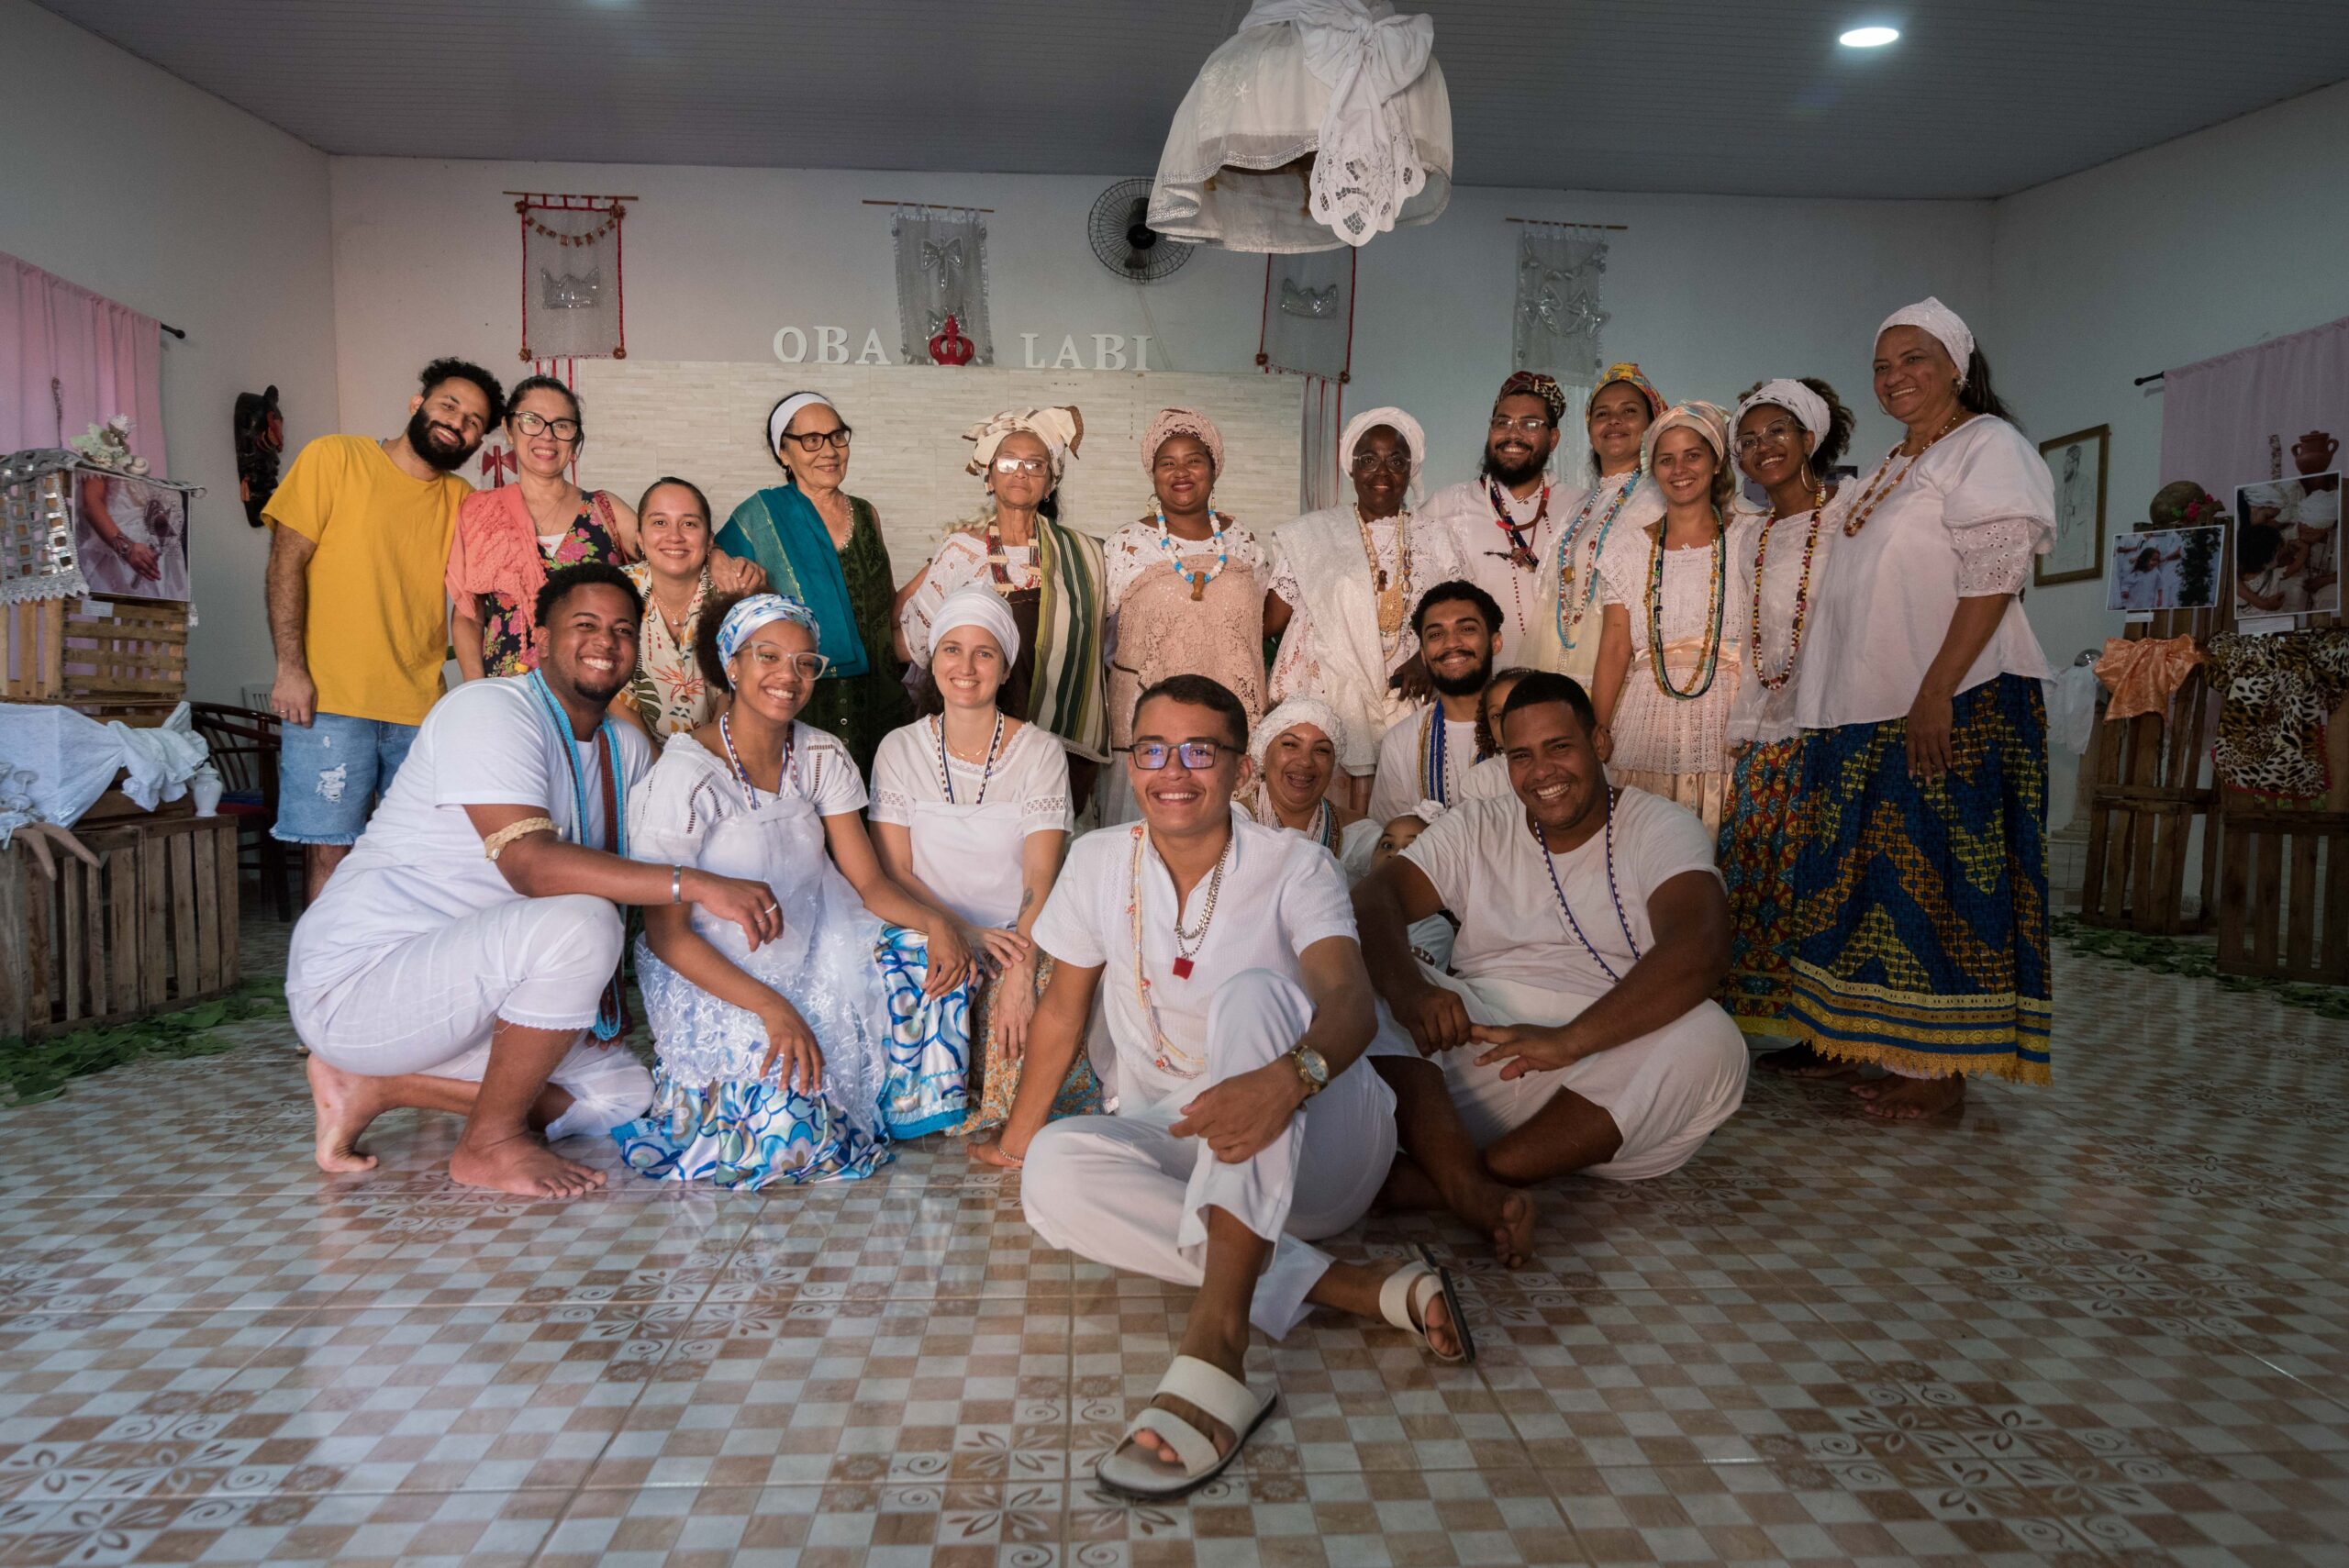 Comunidade do Ilê Axé Òbá Labí, matriarcas do CRAS de Axe e demais convidados do evento posam para a foto ao final das atividades realizadas. Foto: Bárbara Dias